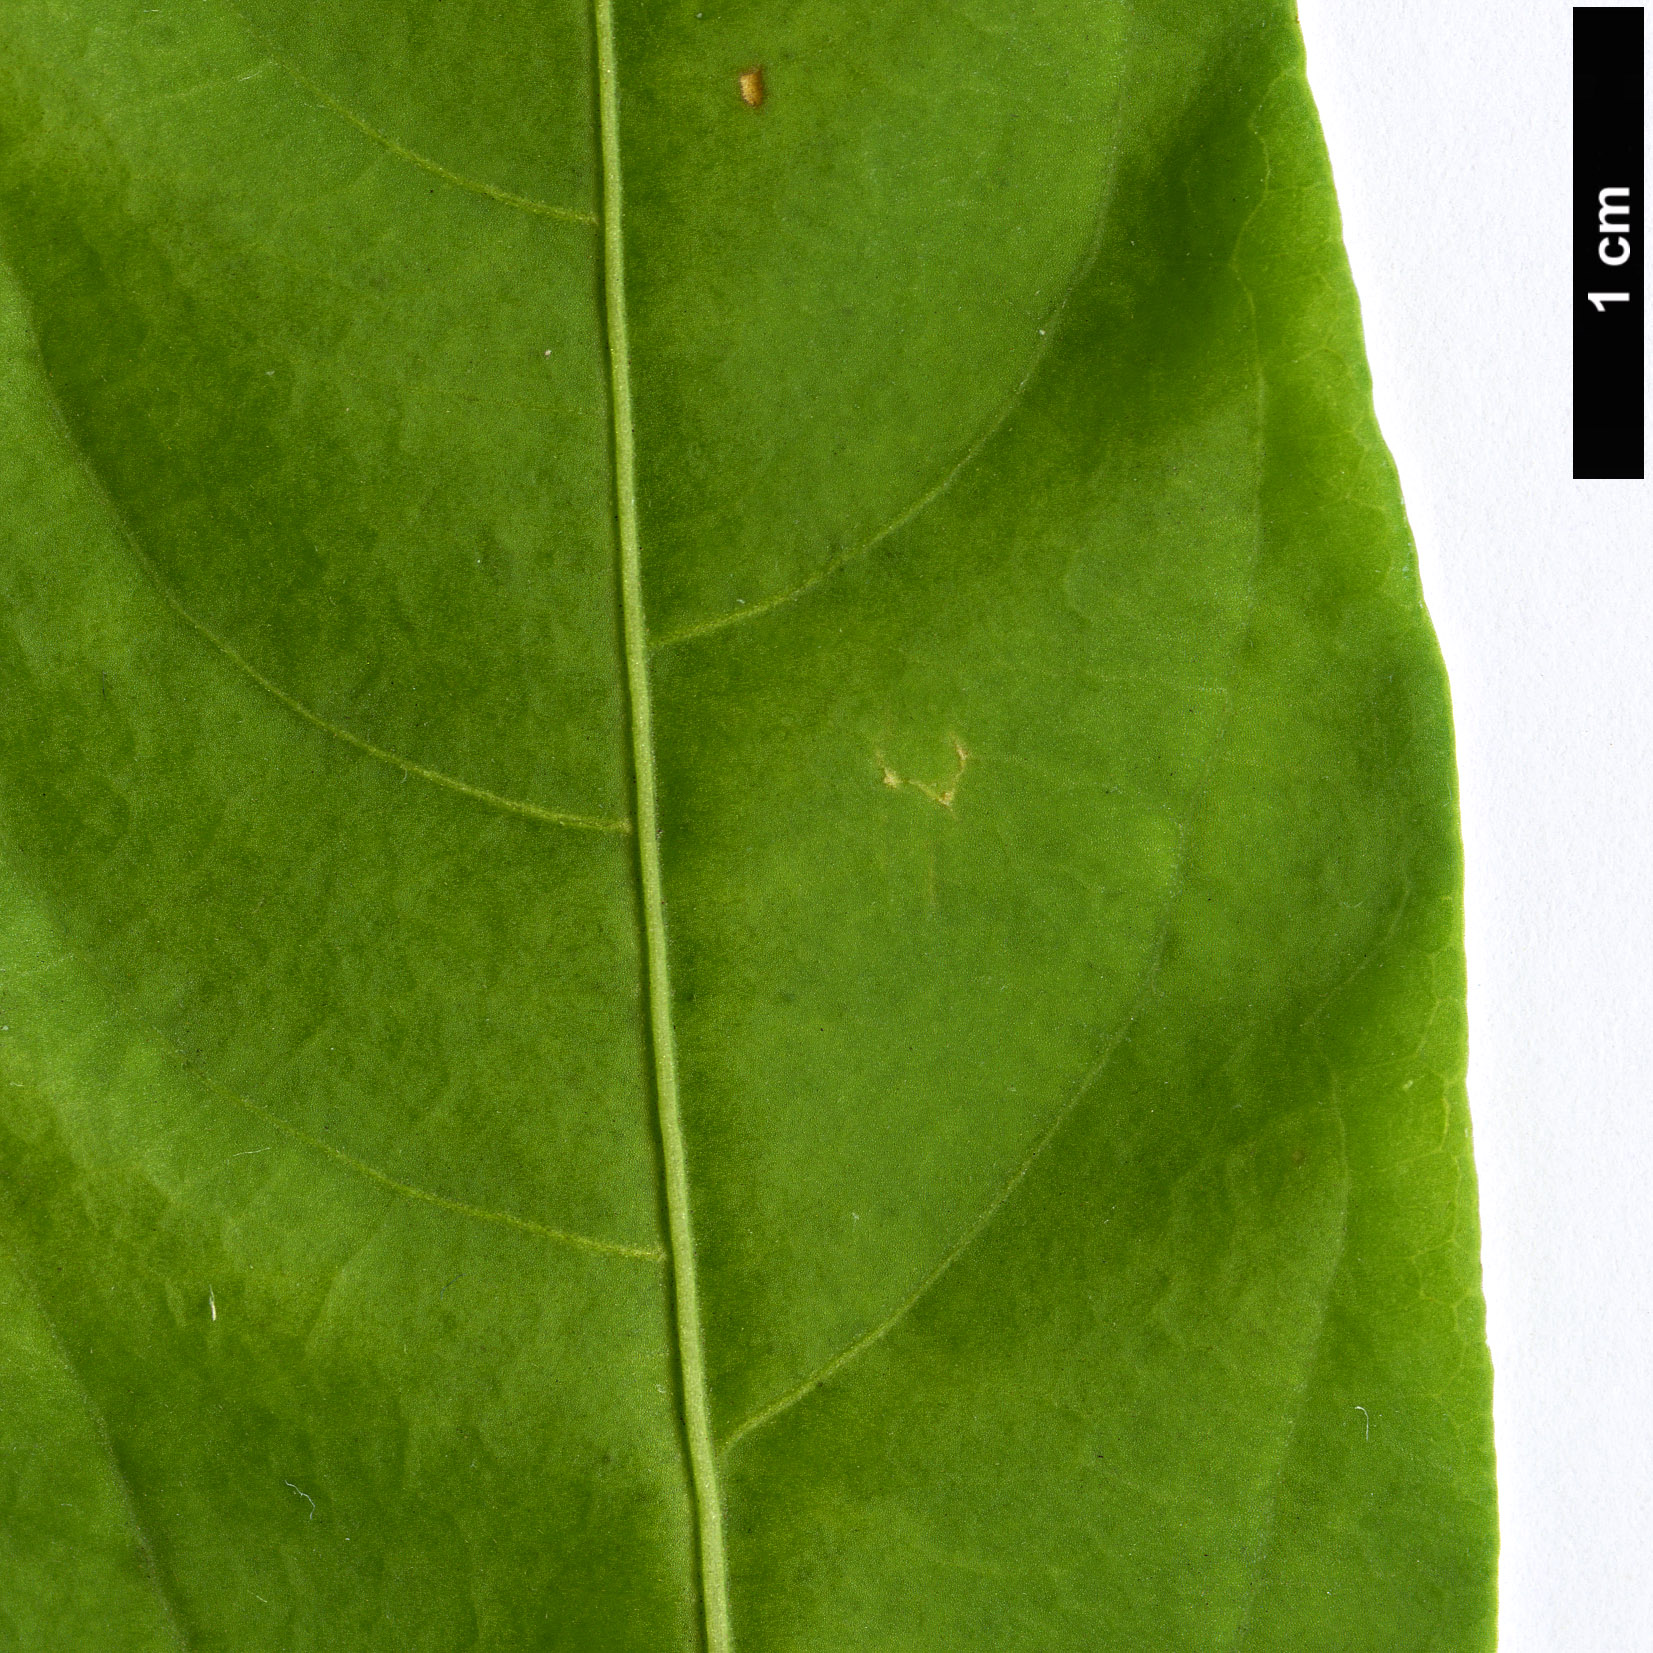 High resolution image: Family: Solanaceae - Genus: Cestrum - Taxon: nocturnum